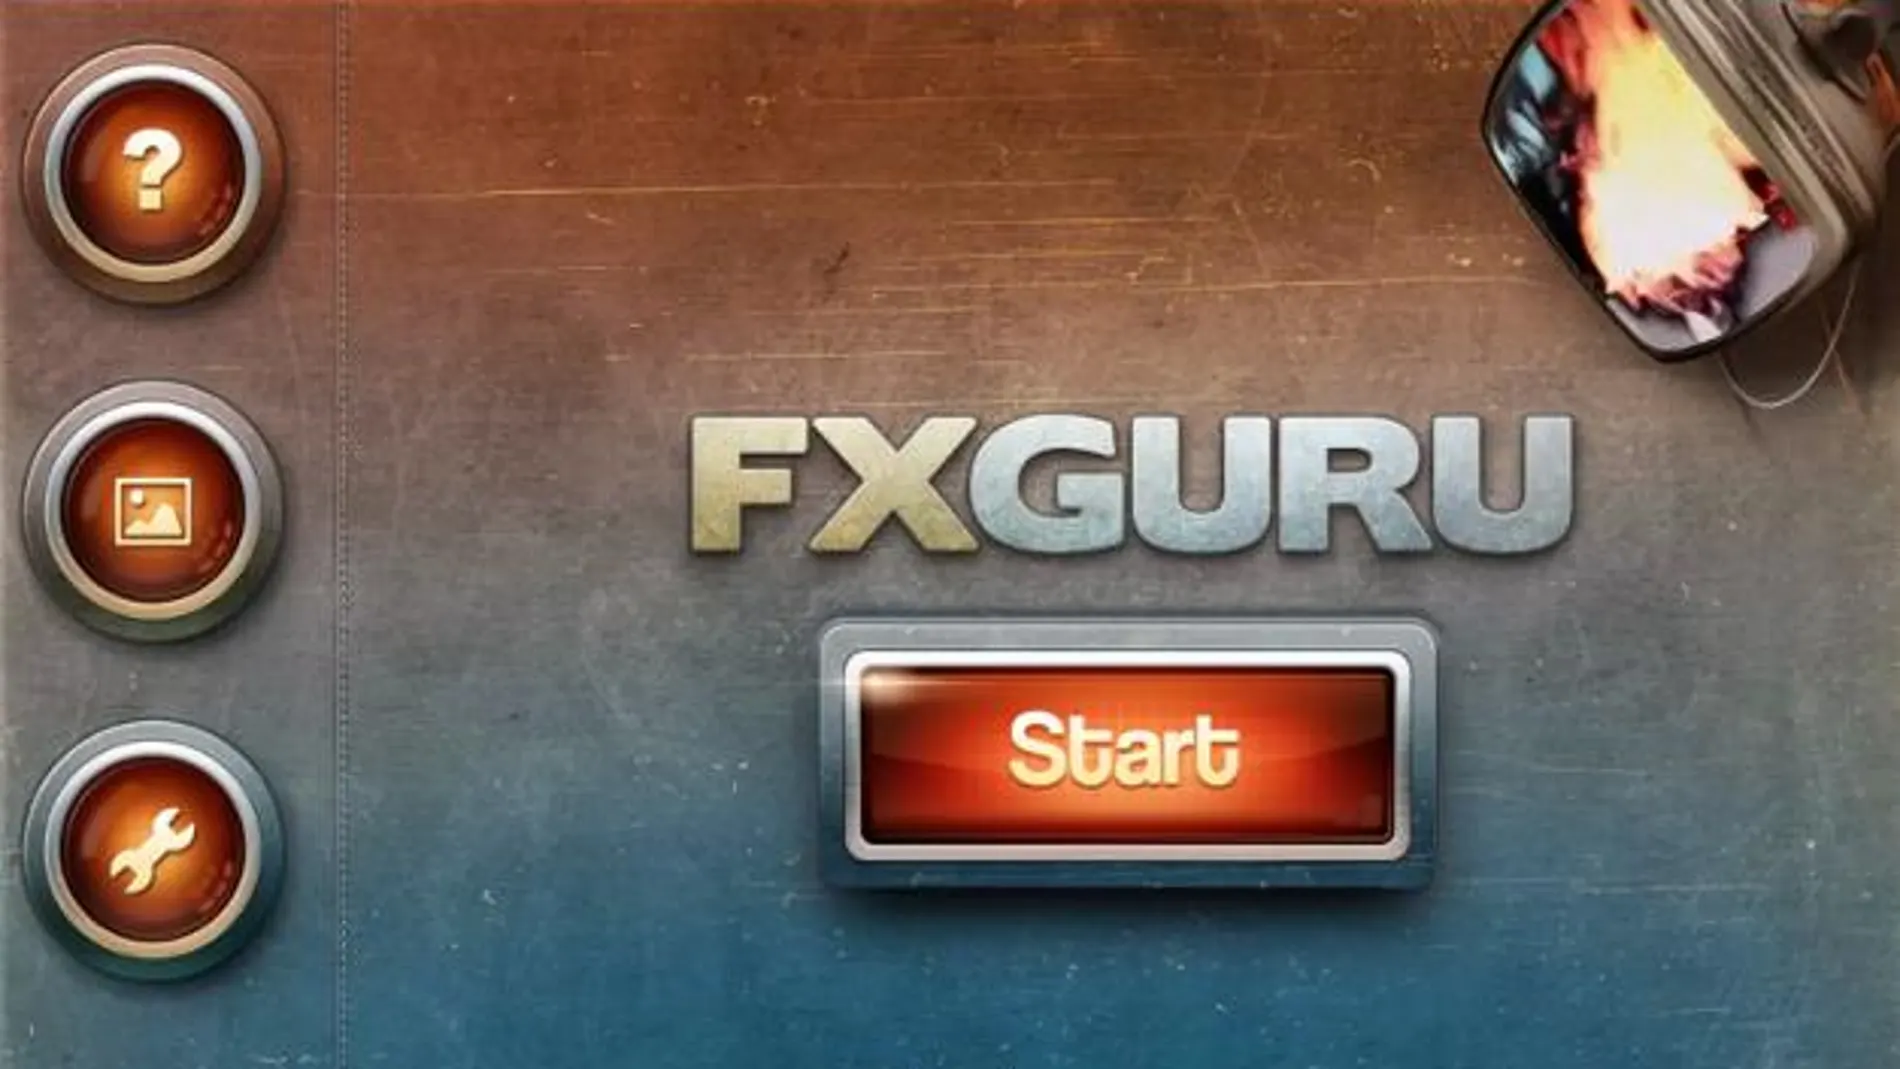 FX Guru te ayuda a crear efectos cinematográficos con tu dispositivo Android